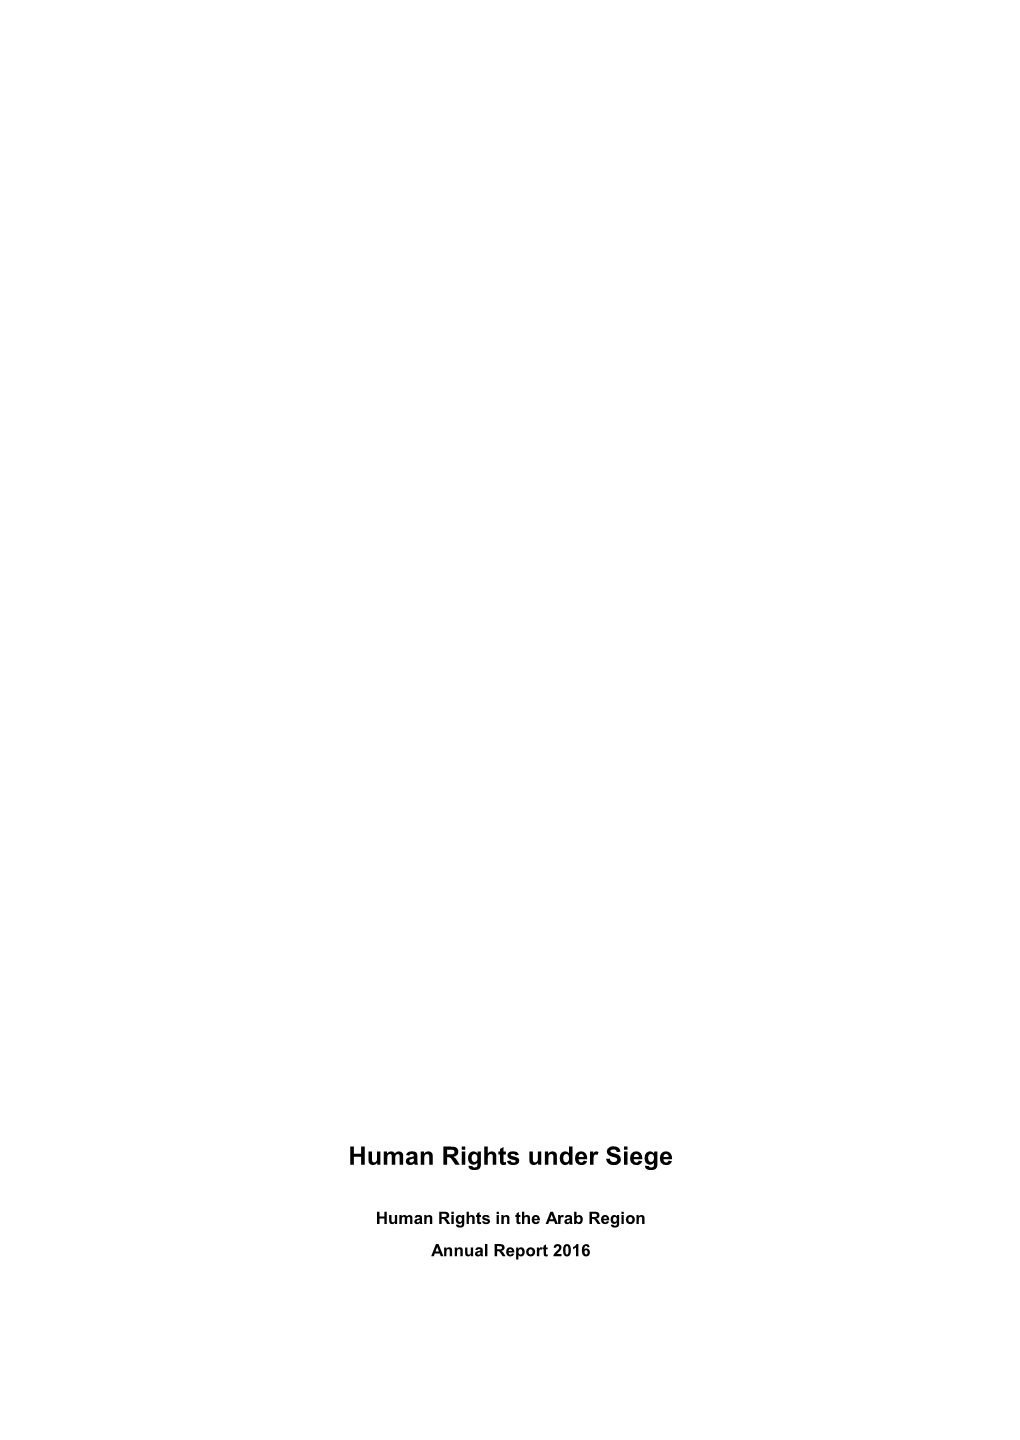 Human Rights Under Siege